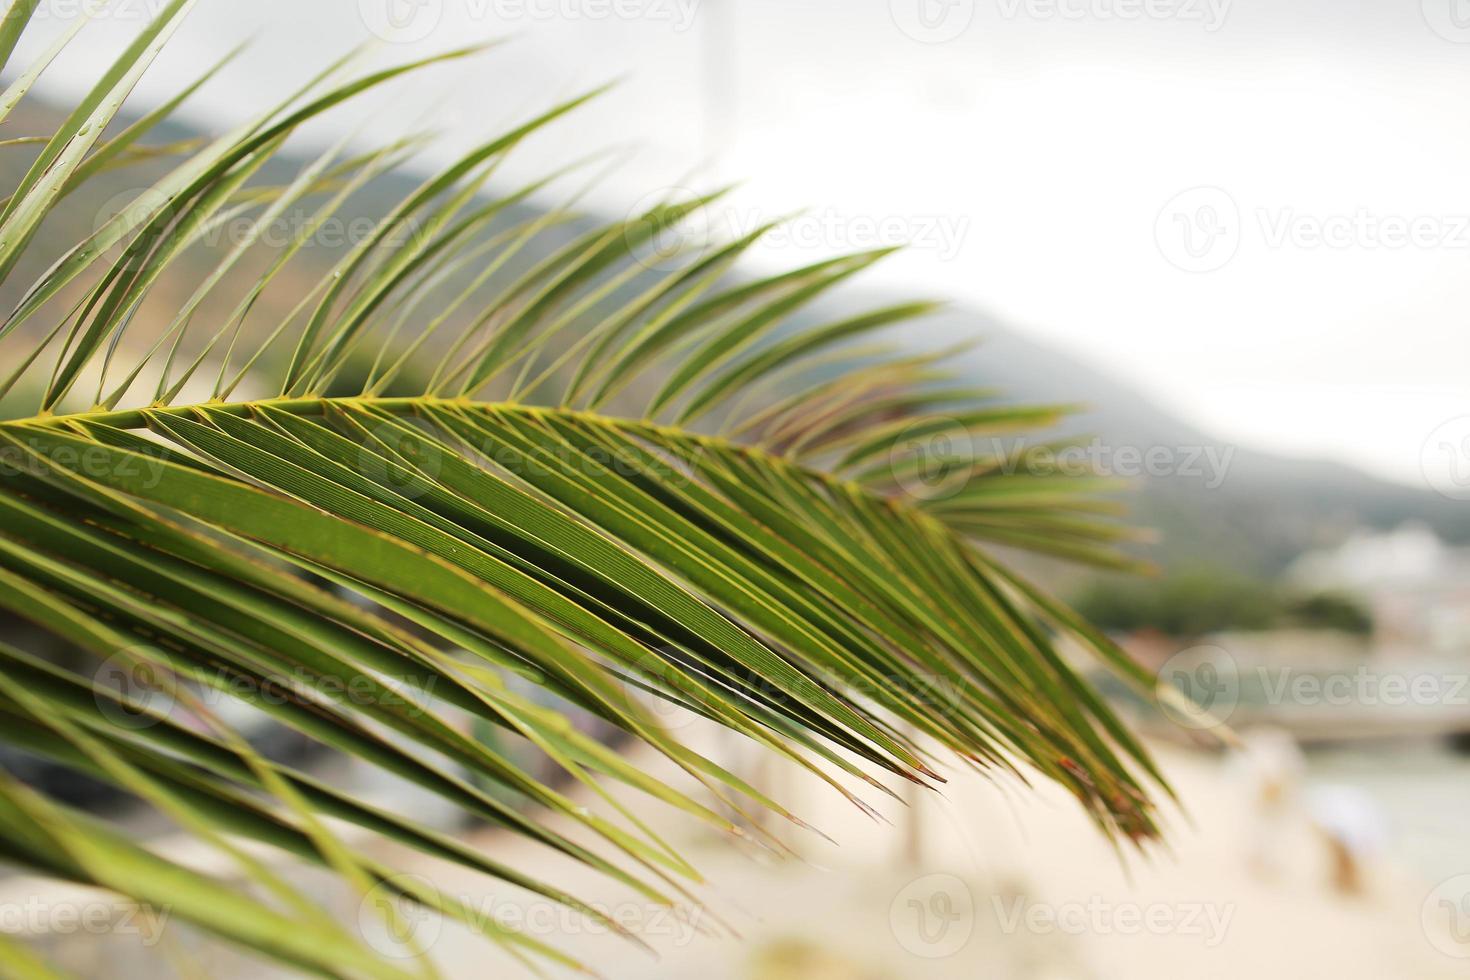 hoja de palma verde. foto abstracta de la selva de la isla tropical. día soleado en un lugar exótico. plantilla de banner de hotel turístico o resort. hoja esponjosa de palmera de coco. Paraíso tropical